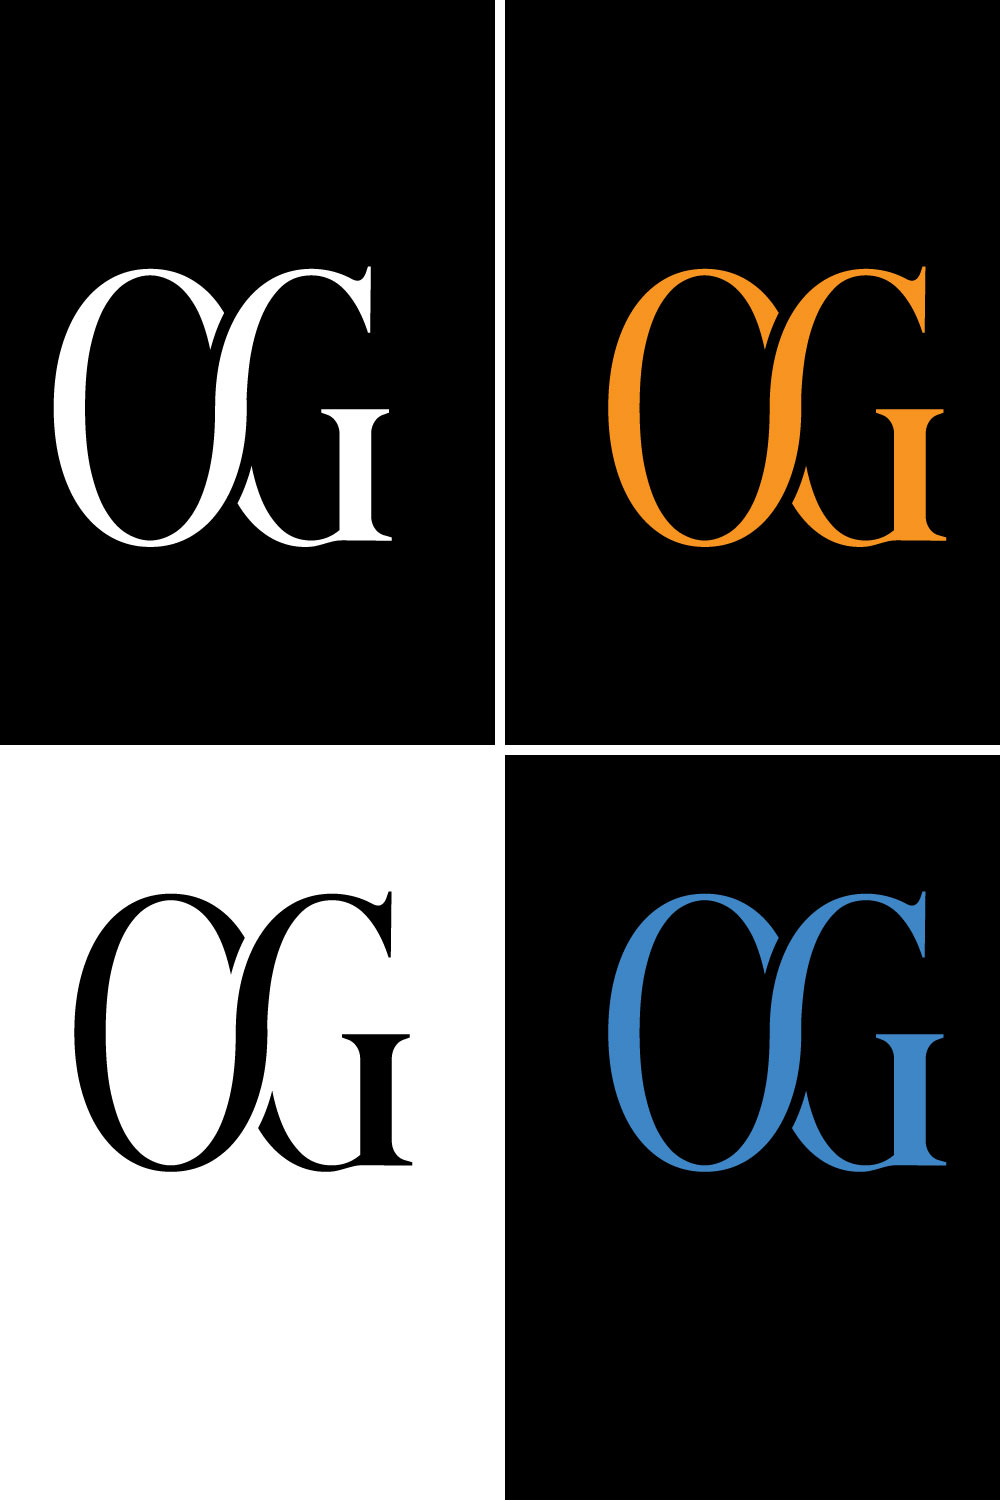 CG or OG Letter Logo Template-Brand Identity pinterest preview image.